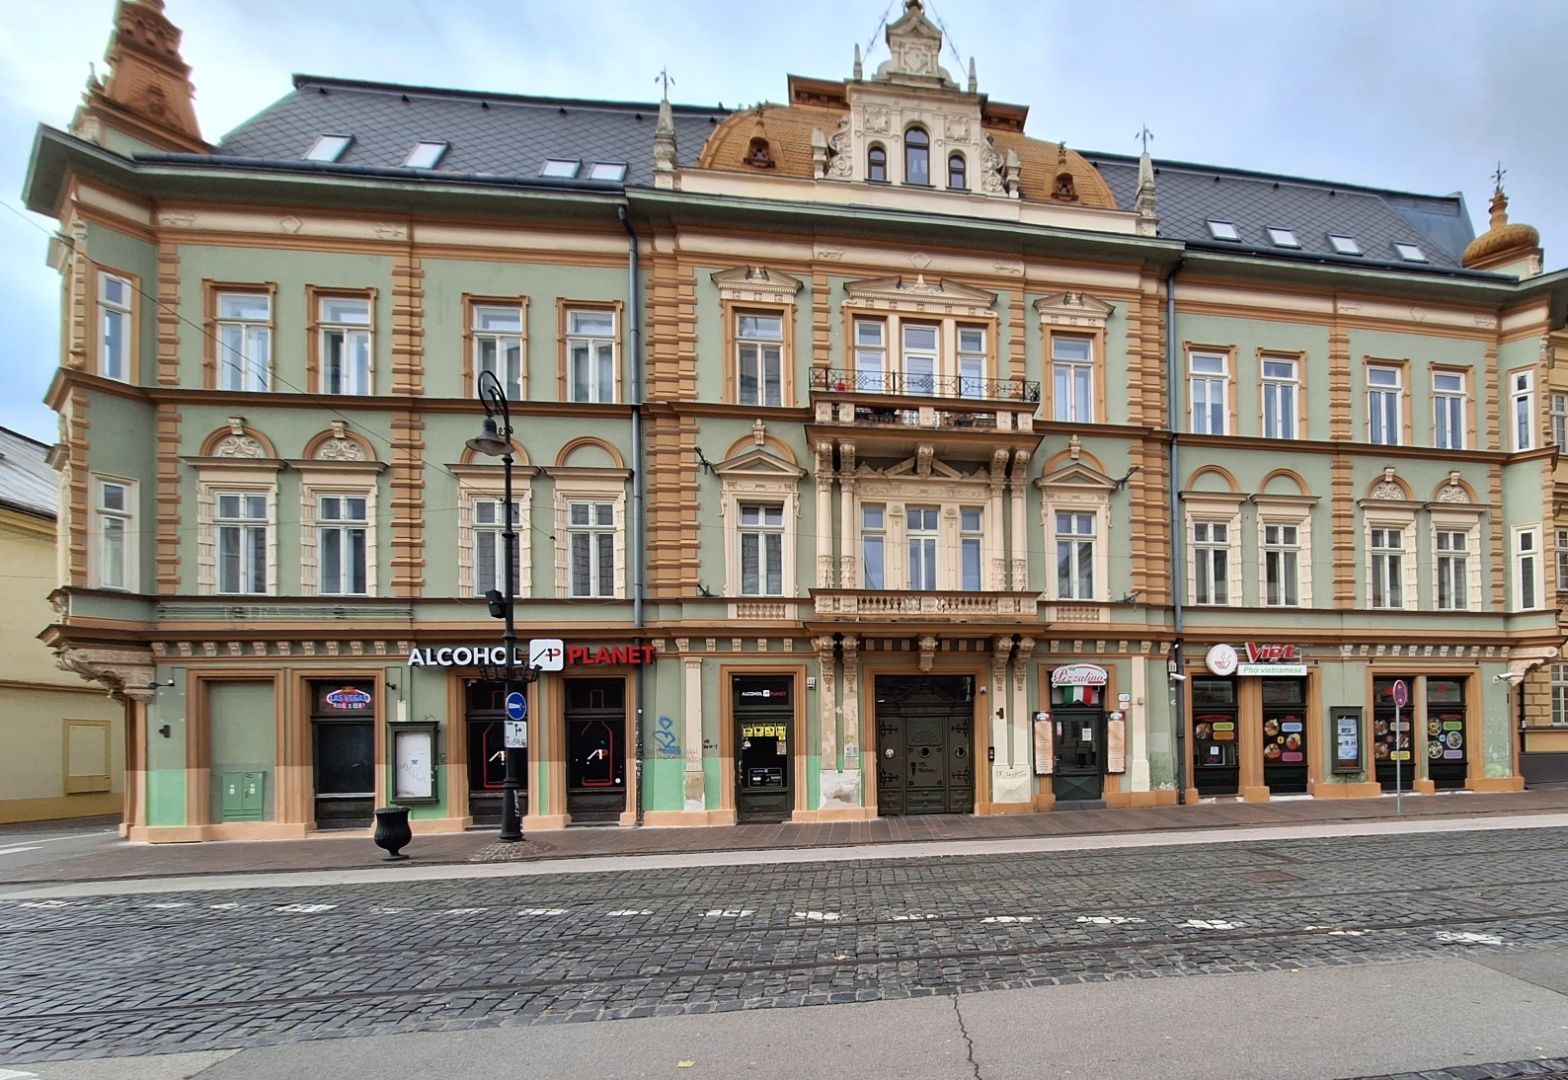 ADOMIS - predáme 3-izbový bezbariérový 68m2, mezonet,výťahom v historickej budove, parkovanie vo dvore, Hlavná ulica Košice centrum.